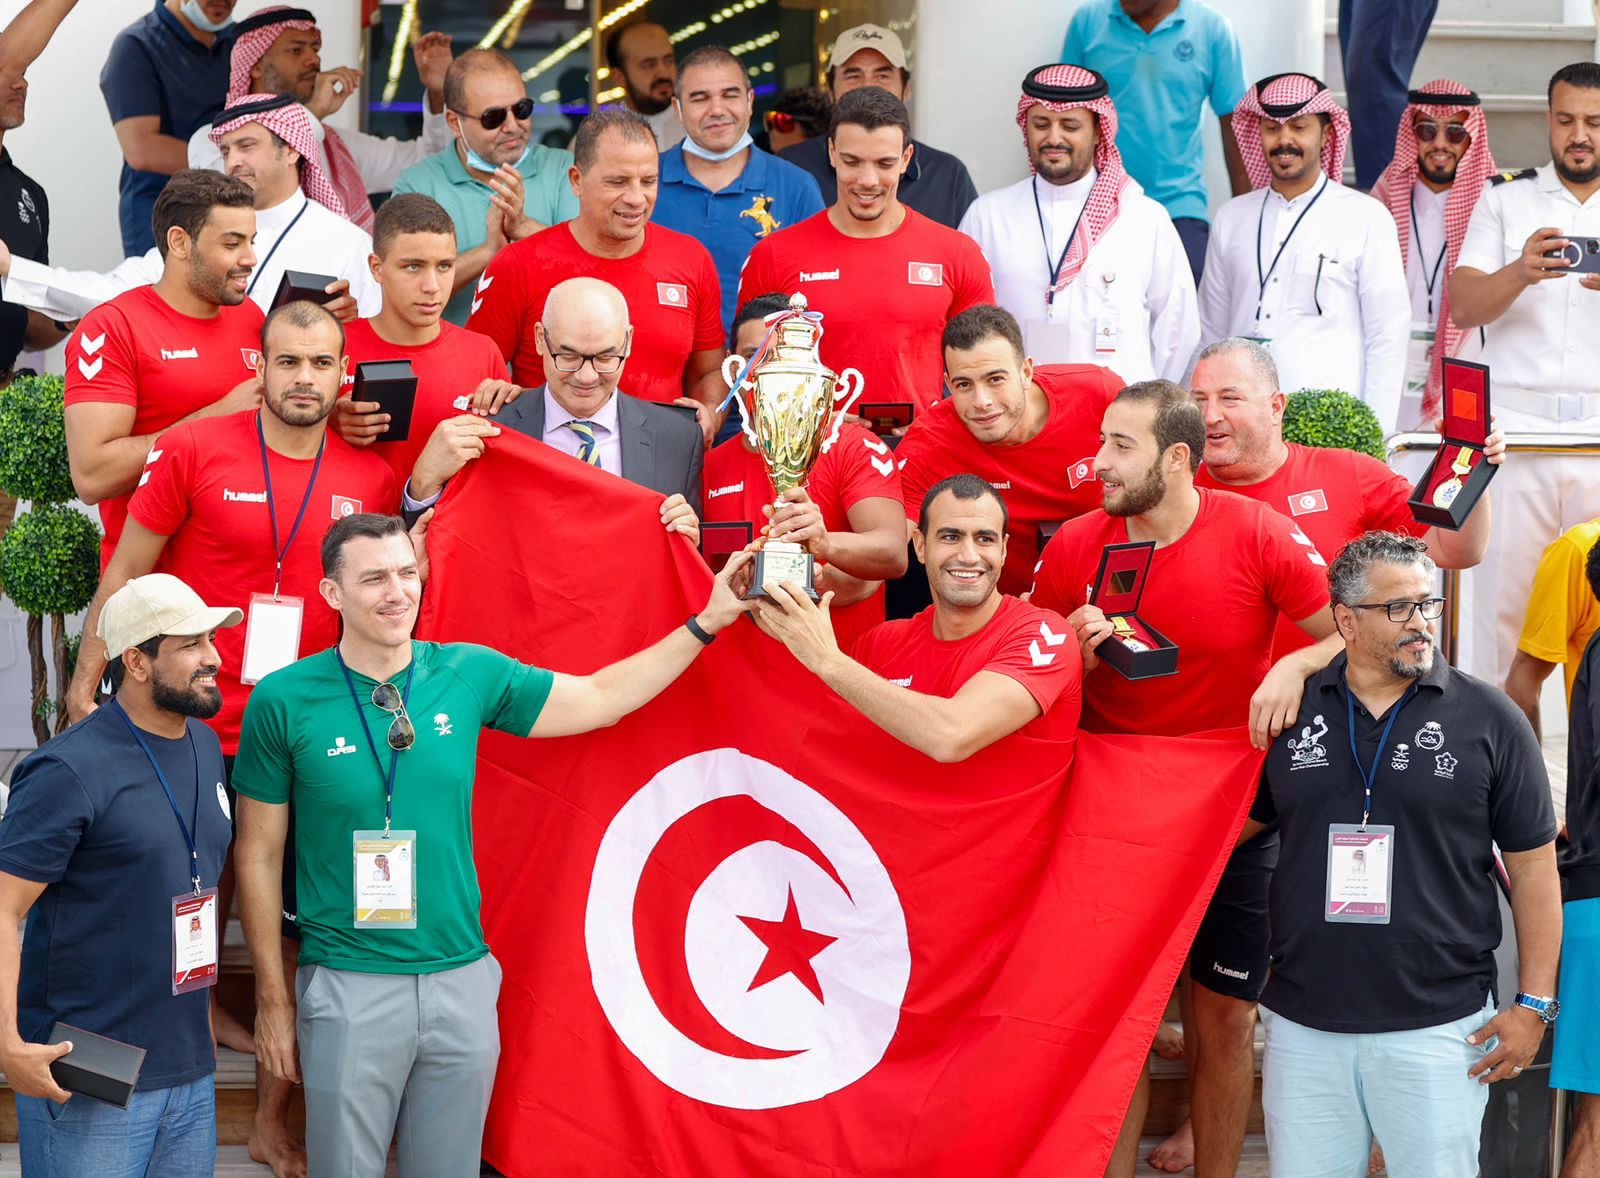 منتخب تونس يحقق كأس بطولة كرة الماء الشاطئية الدولية الأولى بجدة